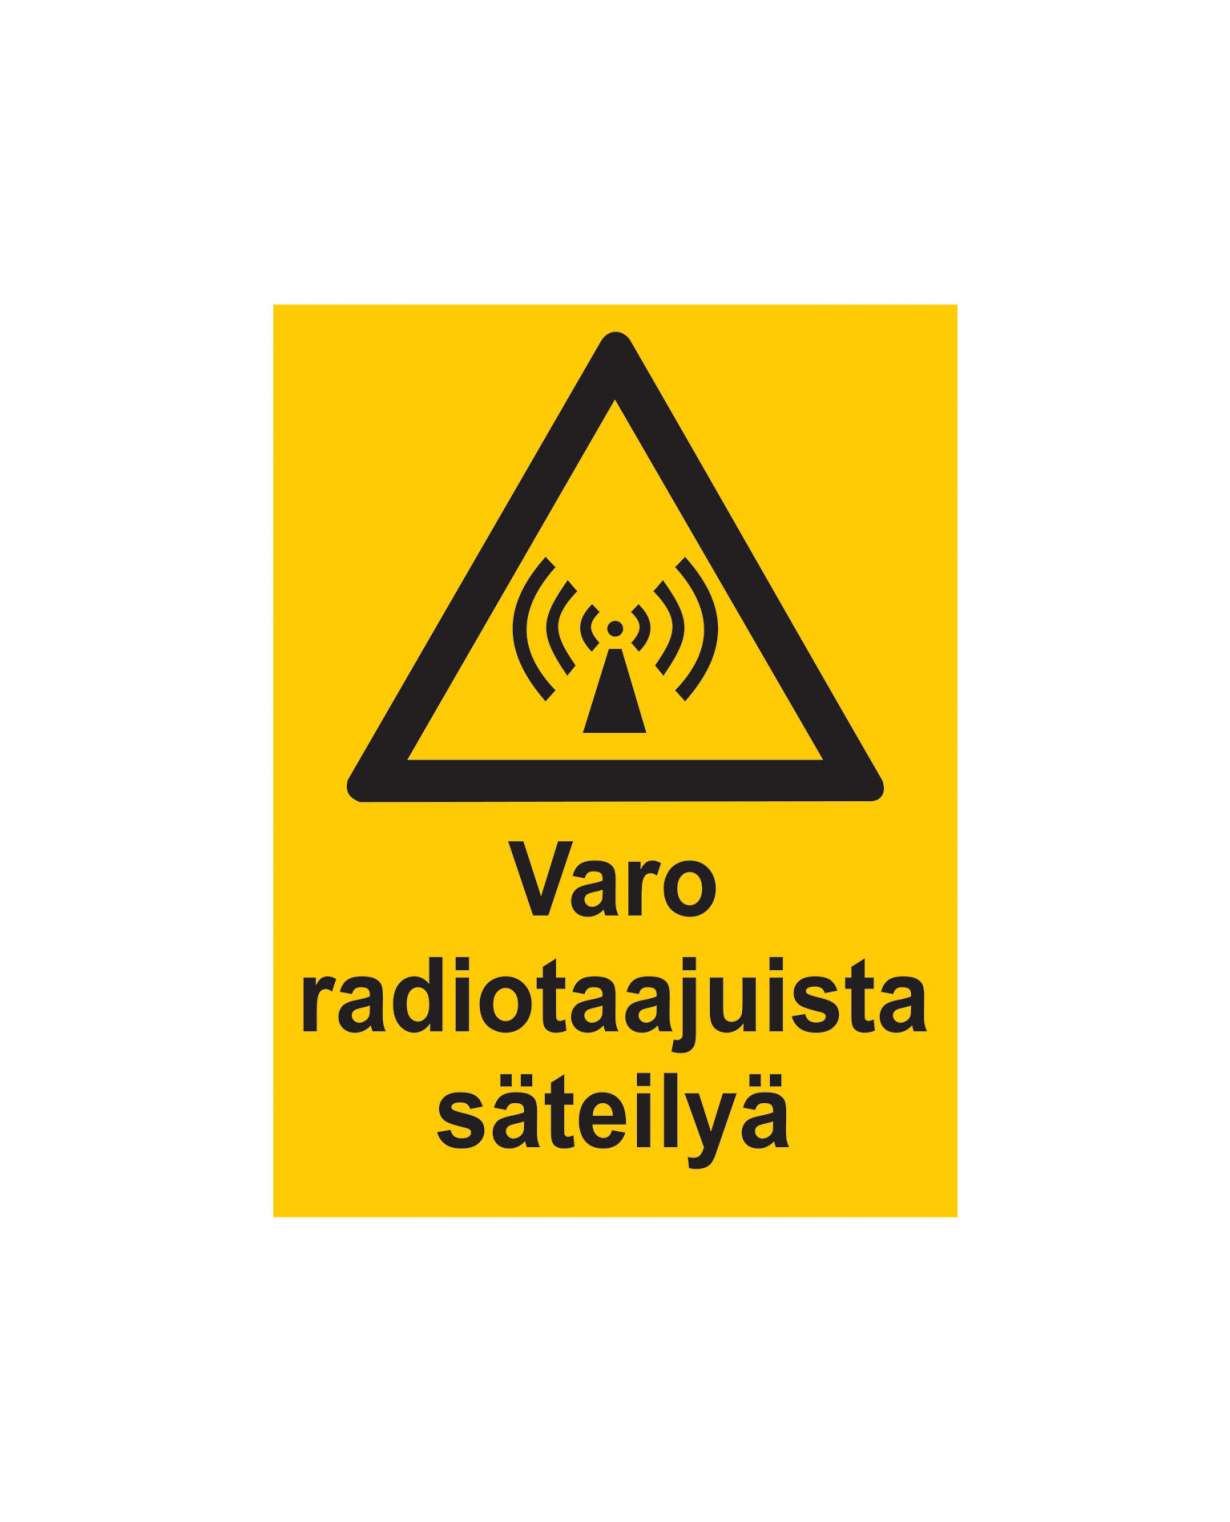 Varo radiotaajuista säteilyä, Ibond alumiini, 300x400 mm